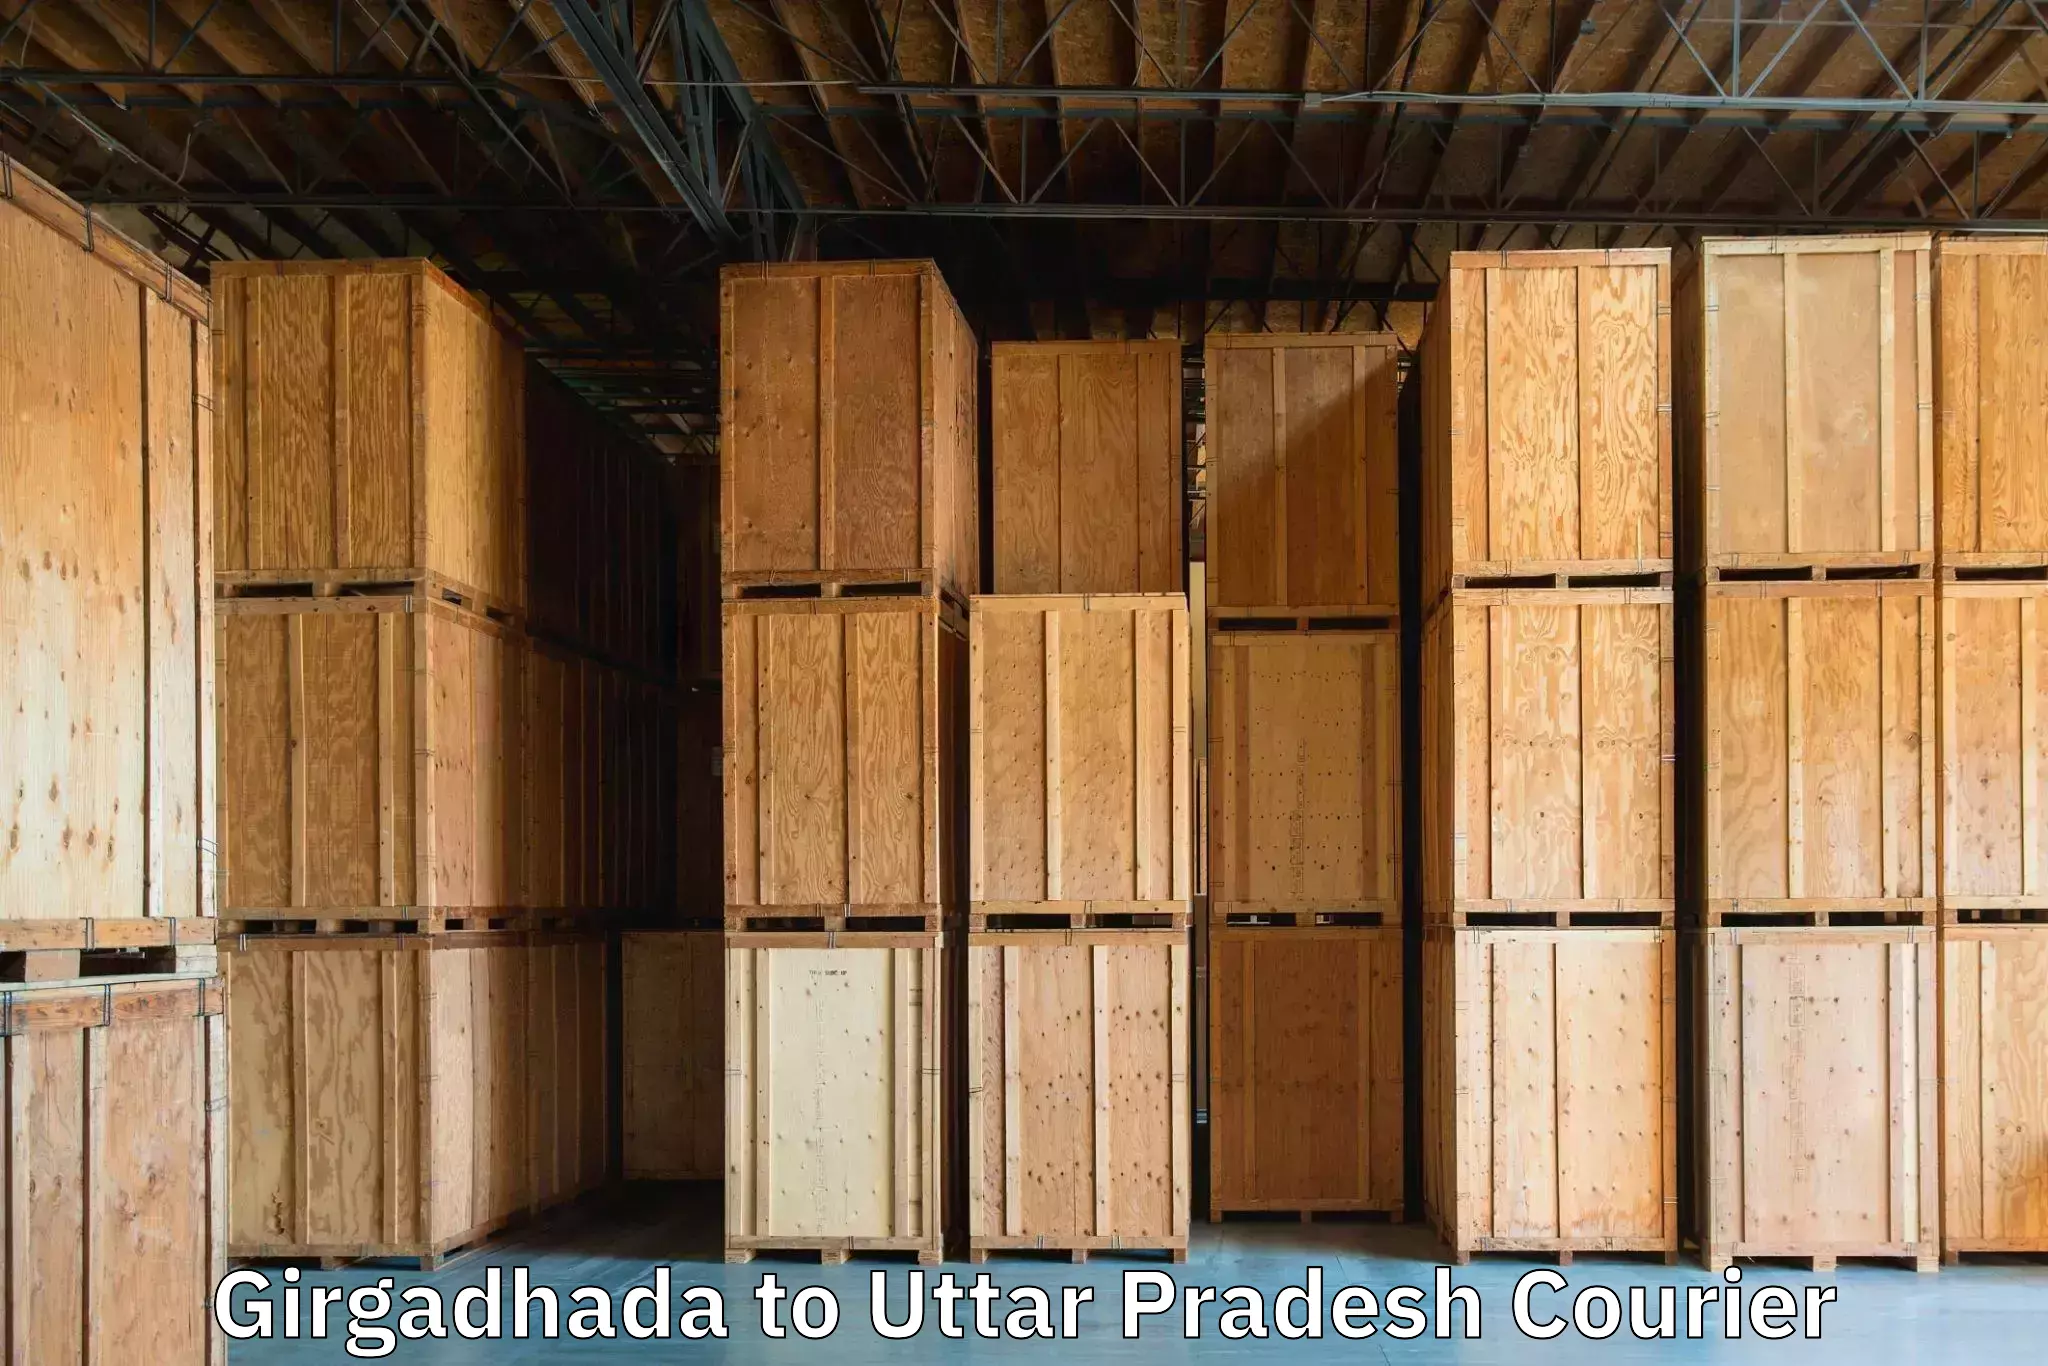 Luggage shipment tracking Girgadhada to Tilhar